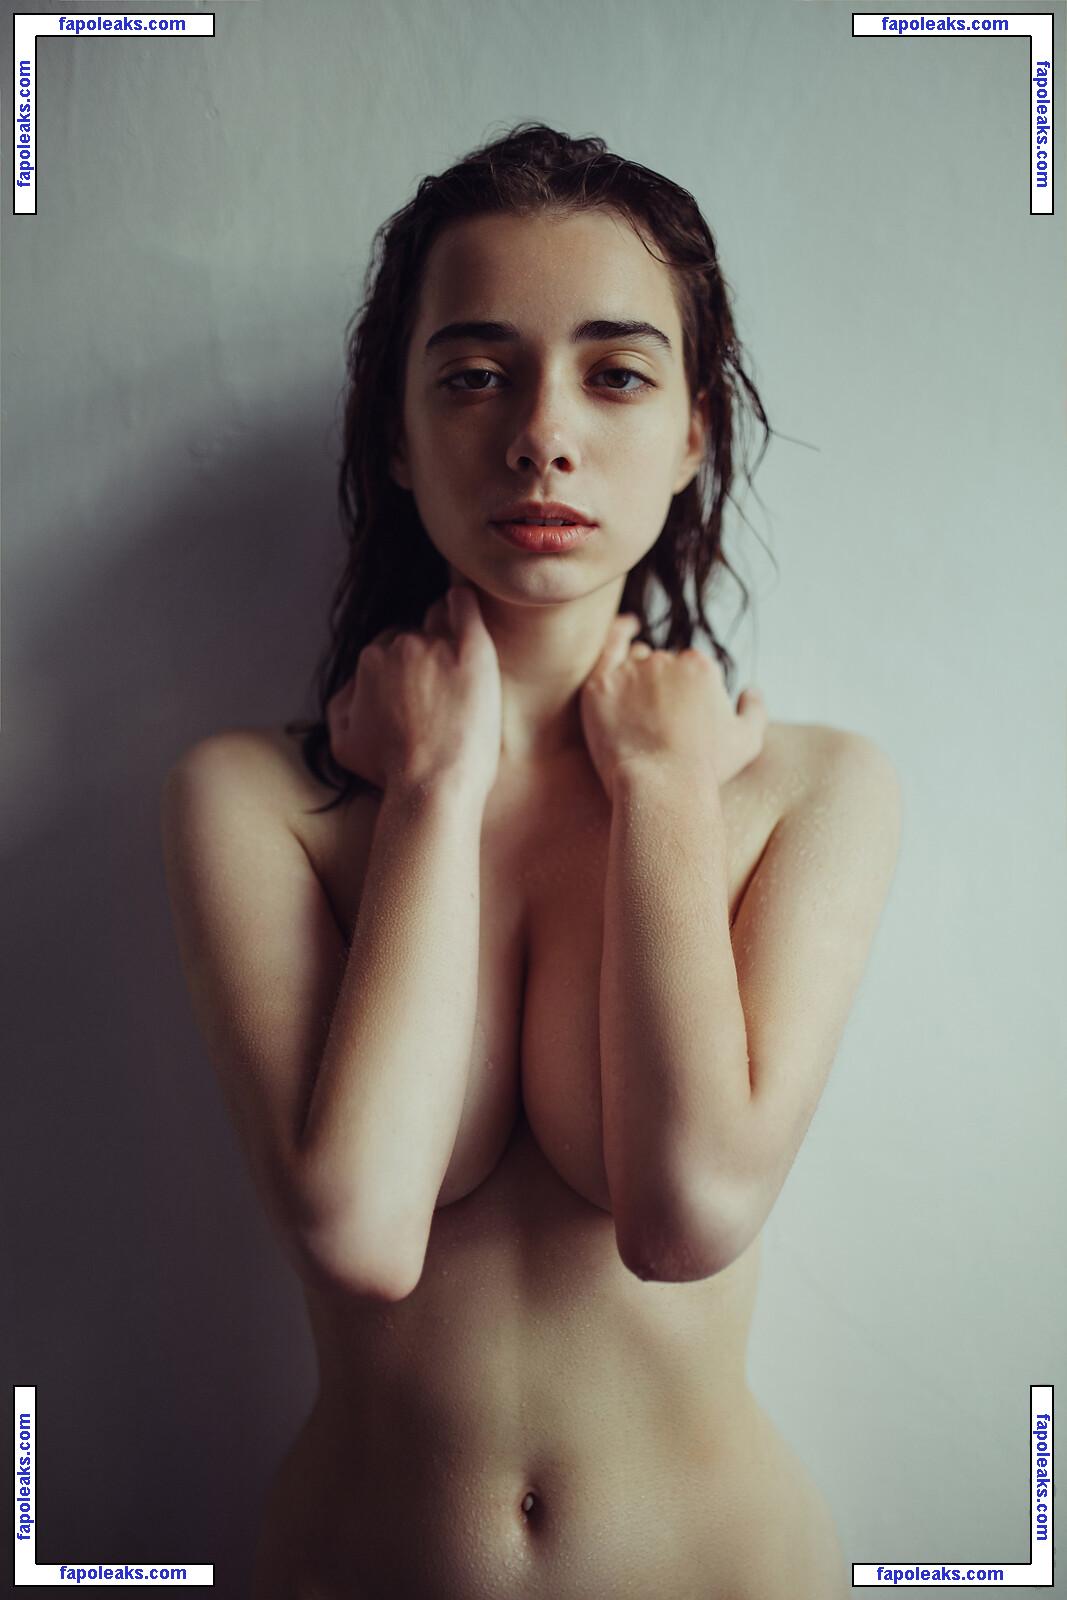 Pauline Korzun nude photo #0027 from OnlyFans